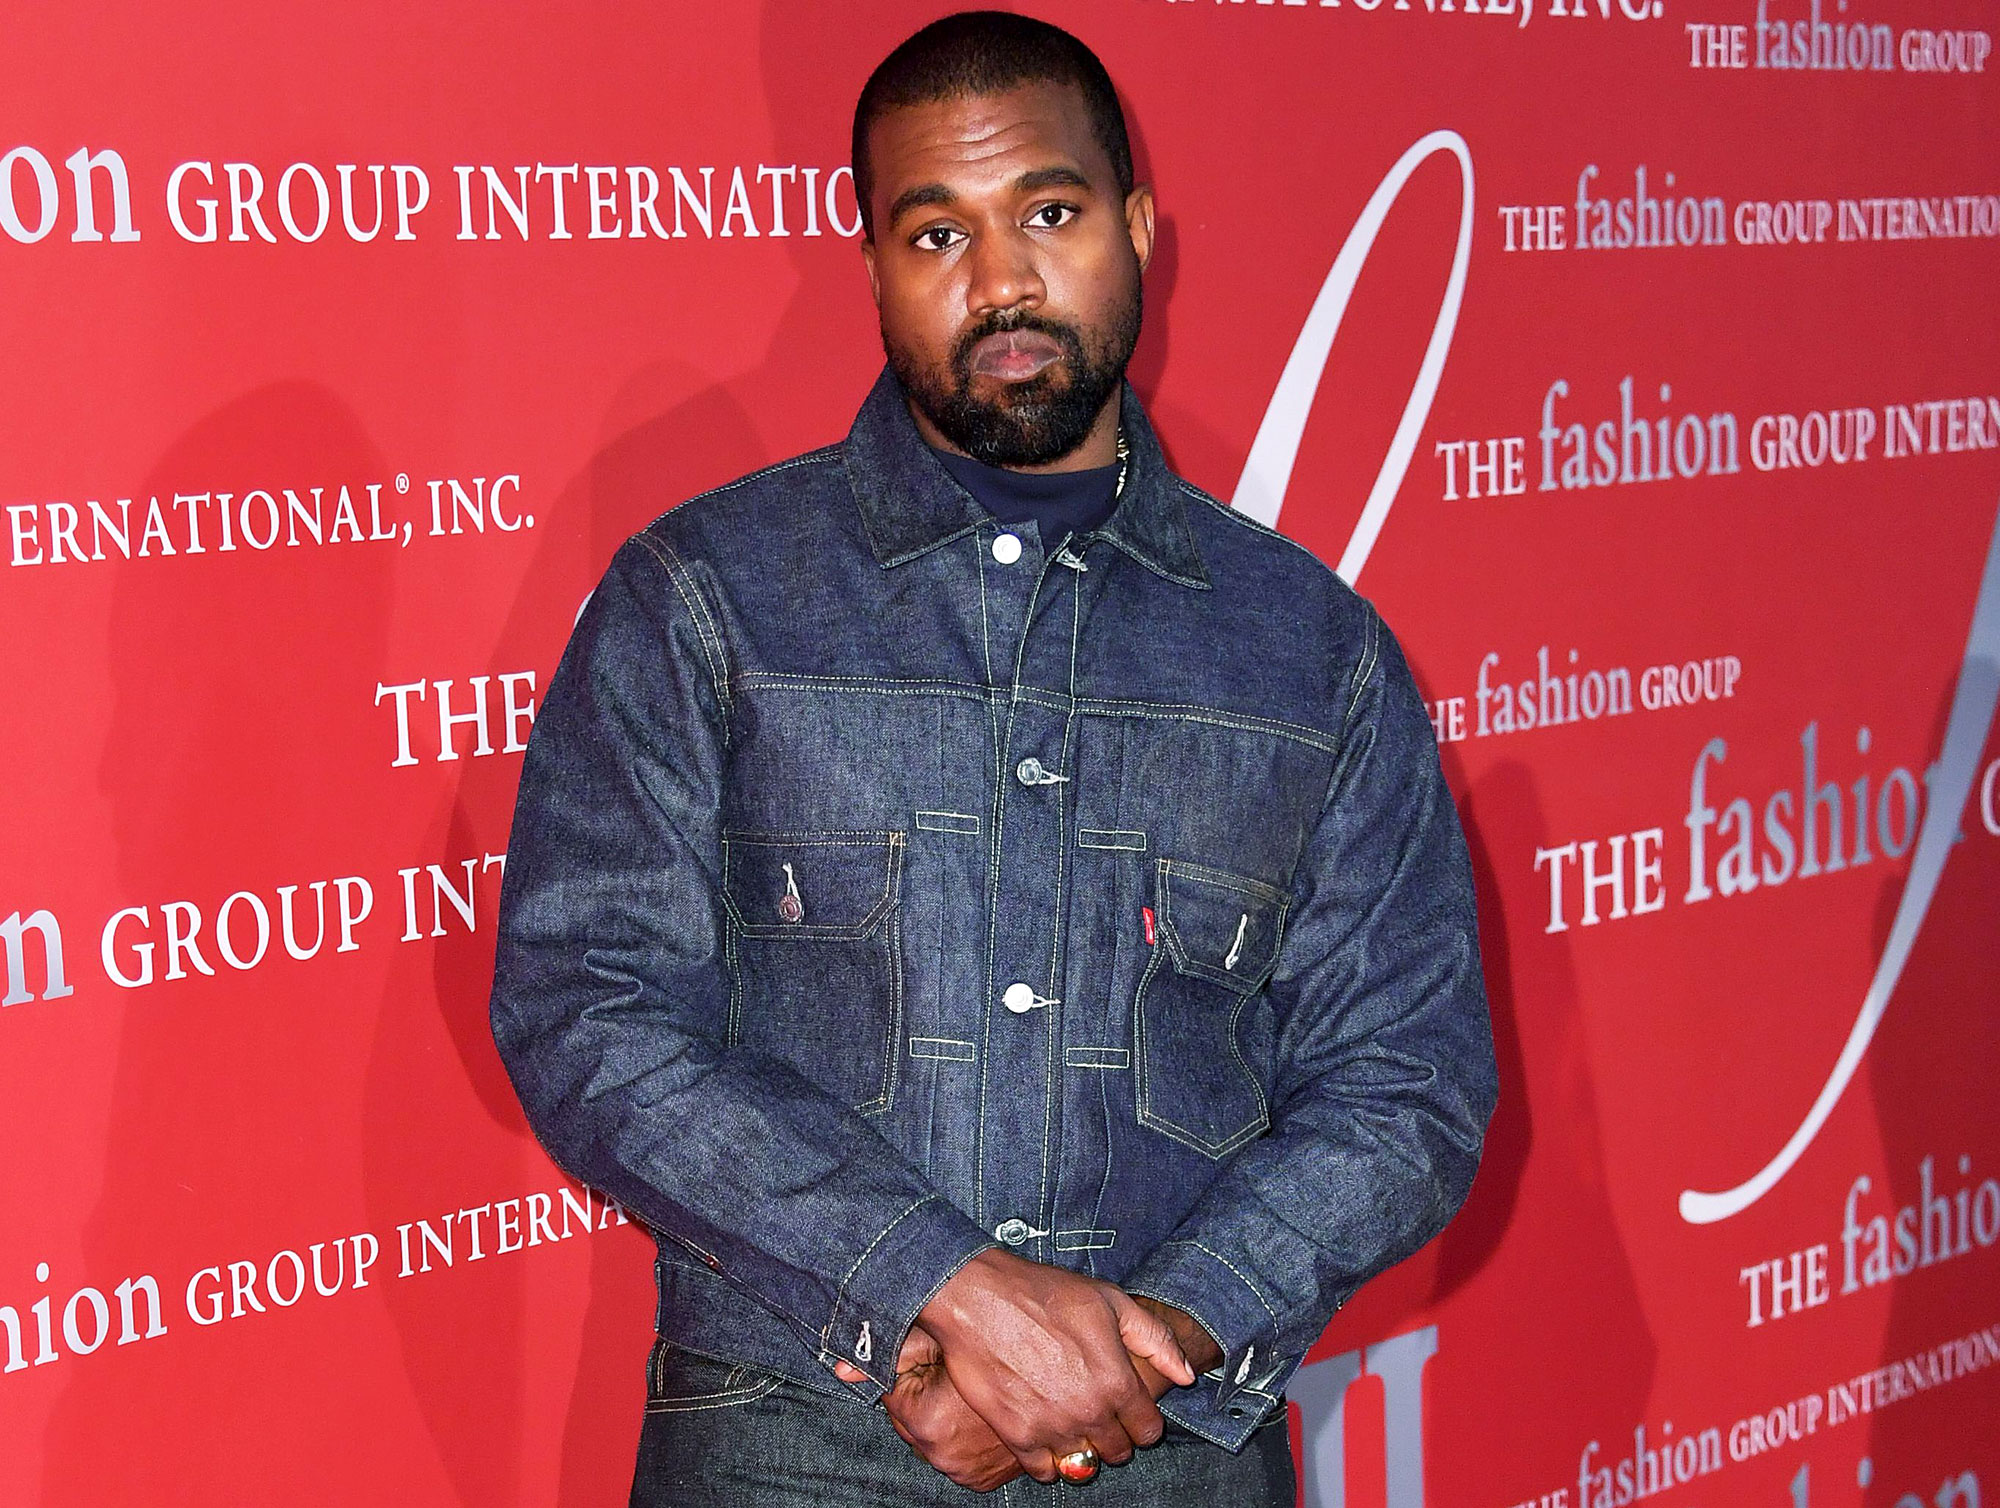 Gigi Hadid Calls Kanye West a 'Bully' Amid Fashion Controversy